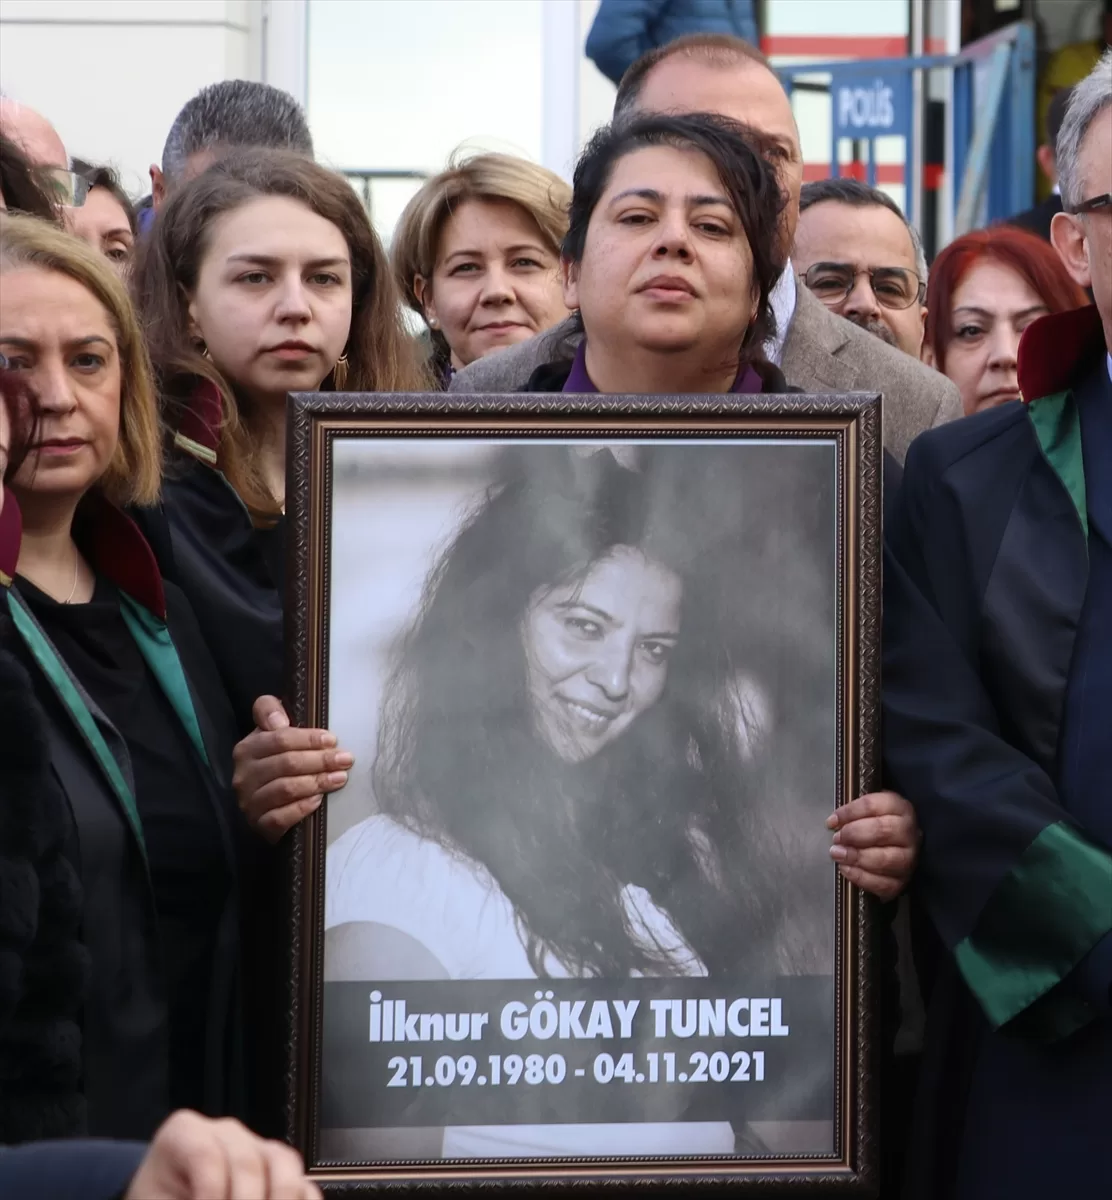 Kırklareli'nde takip ettiği kadını bıçaklayarak öldüren sanığa ağırlaştırılmış müebbet hapis